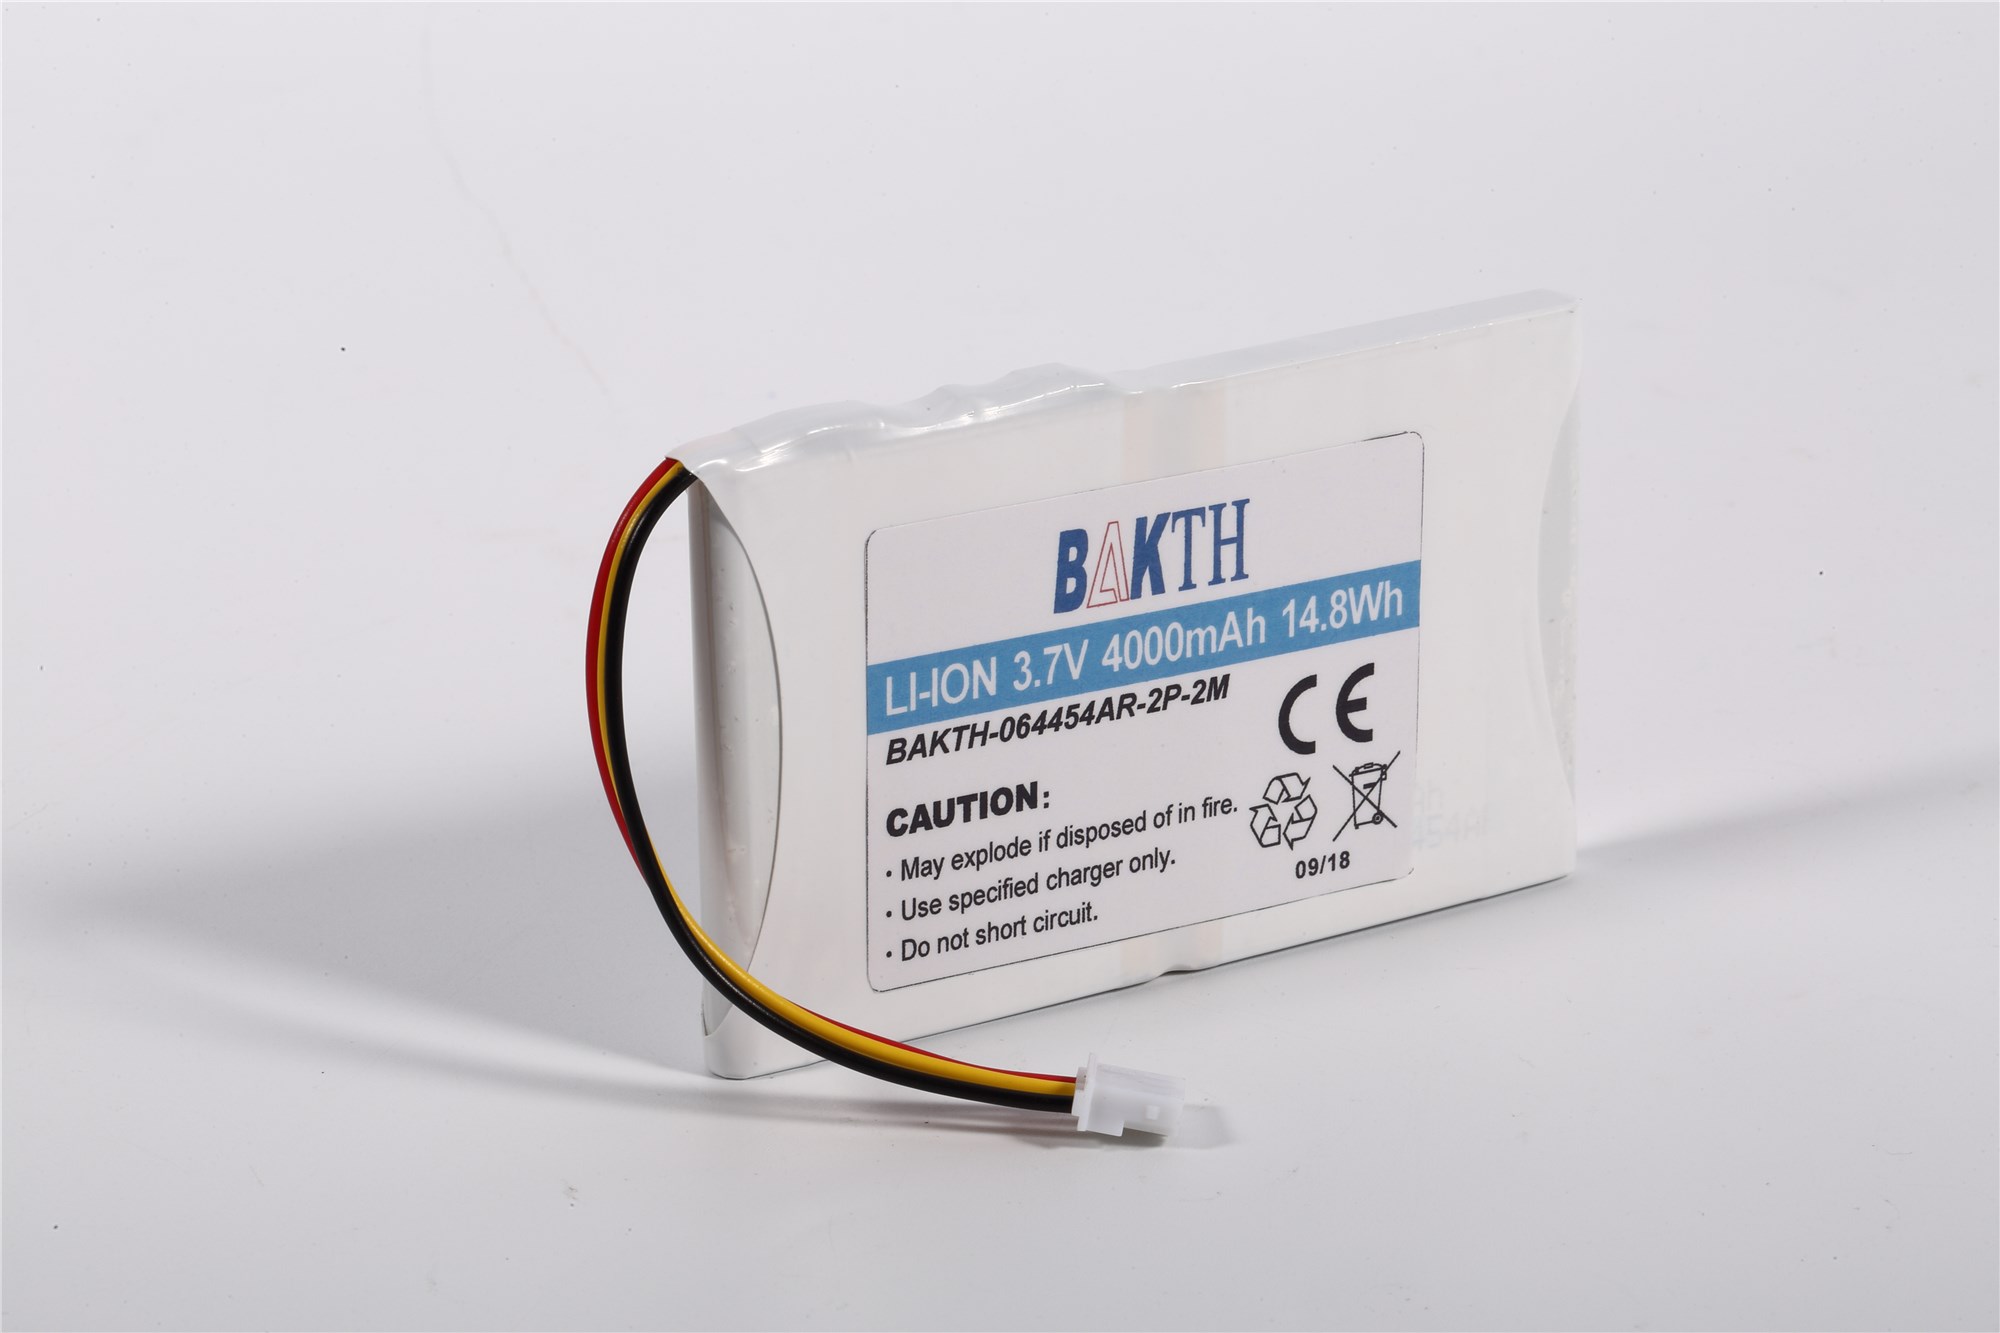 BAKTH-064454-2P-2M Batterie au lithium Ion Pack de batterie LI-ion personnalisée Pack